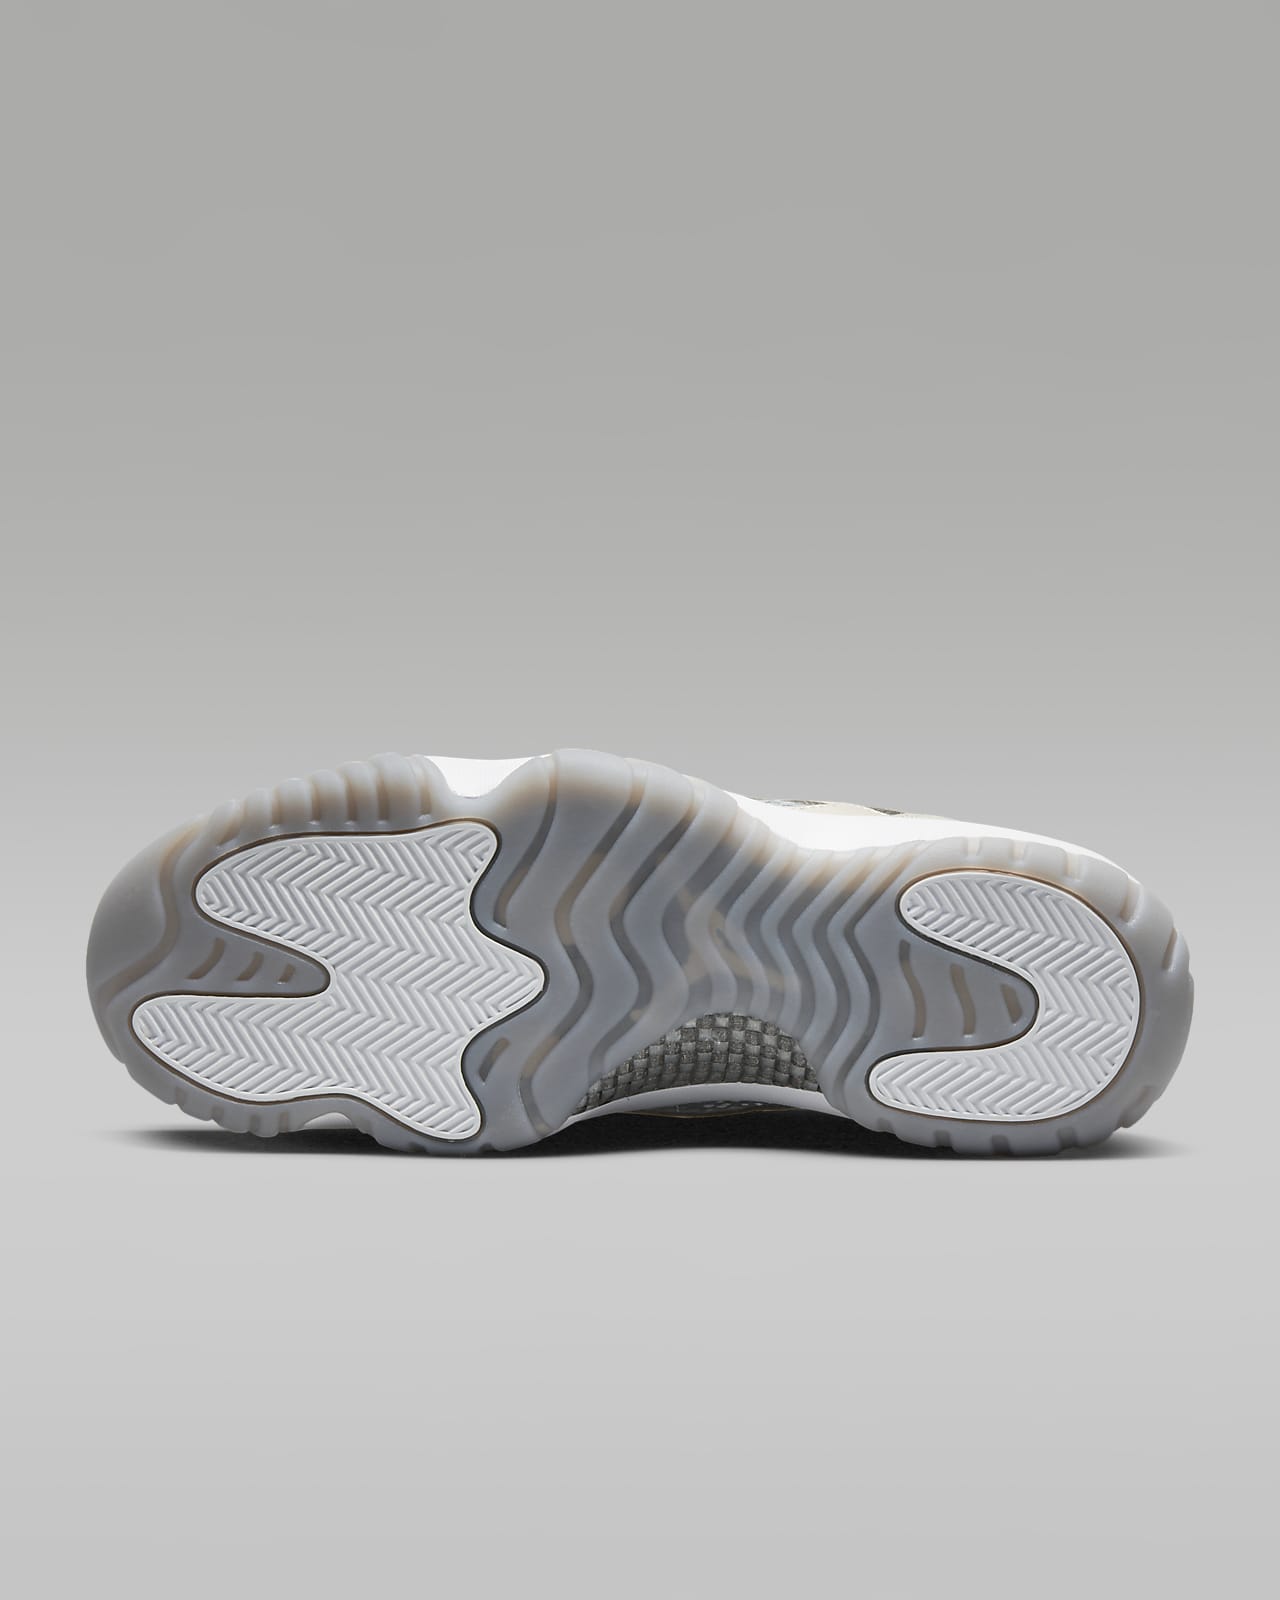 Air Jordan 11 Retro Low IE Men's Shoes. Nike LU